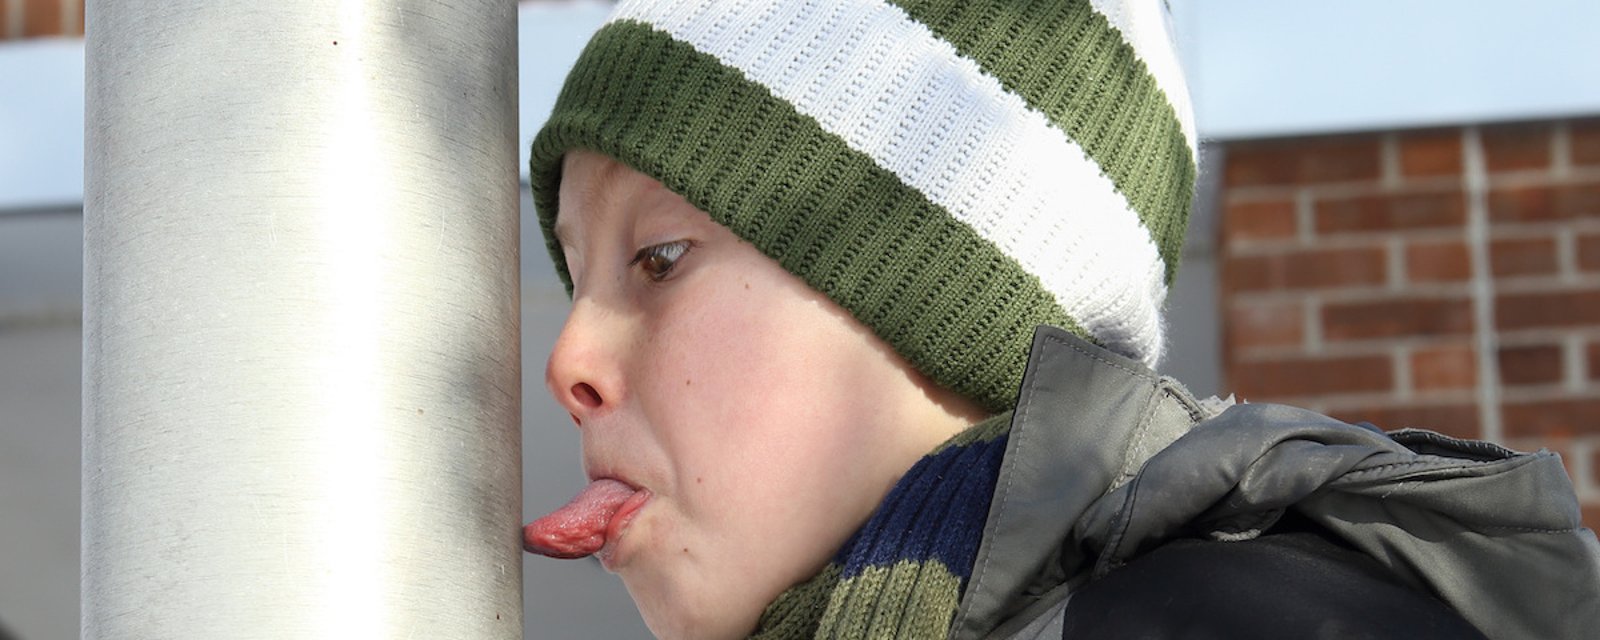 Quoi faire si votre enfant s'est collé la langue sur un poteau en hiver